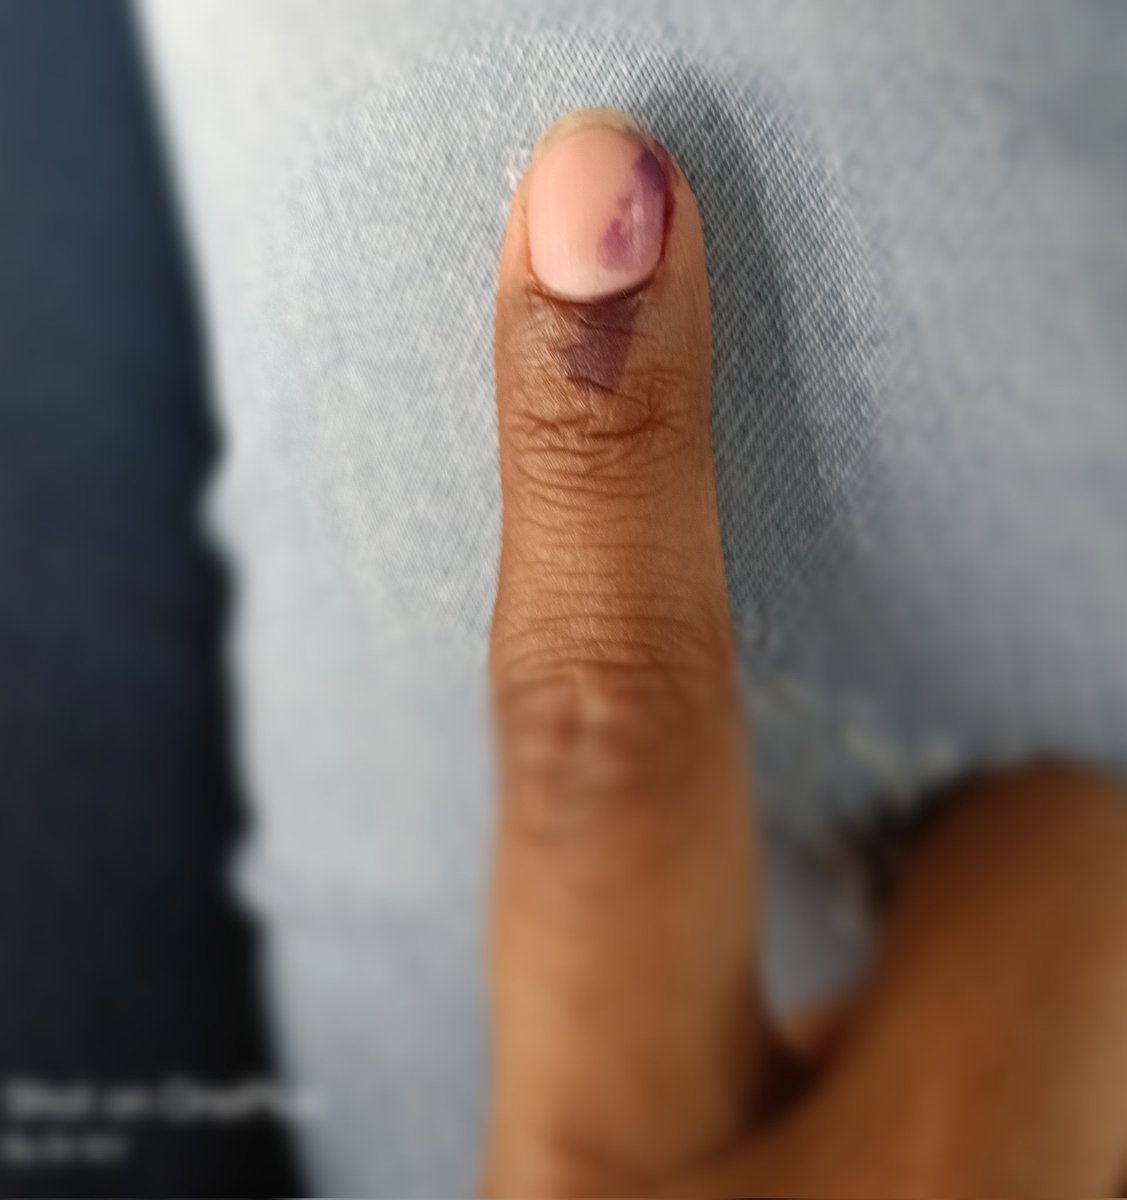 पहले मतदान , फिर जलपान। #LokSabhaElection2024 #Karhal मेरा वोट लोकतंत्र और संविधान की रक्षा के लिए। लोकतंत्र और संविधान को बरकरार रखने के लिए सभी लोग अपना वोट ज़रूर डालें।